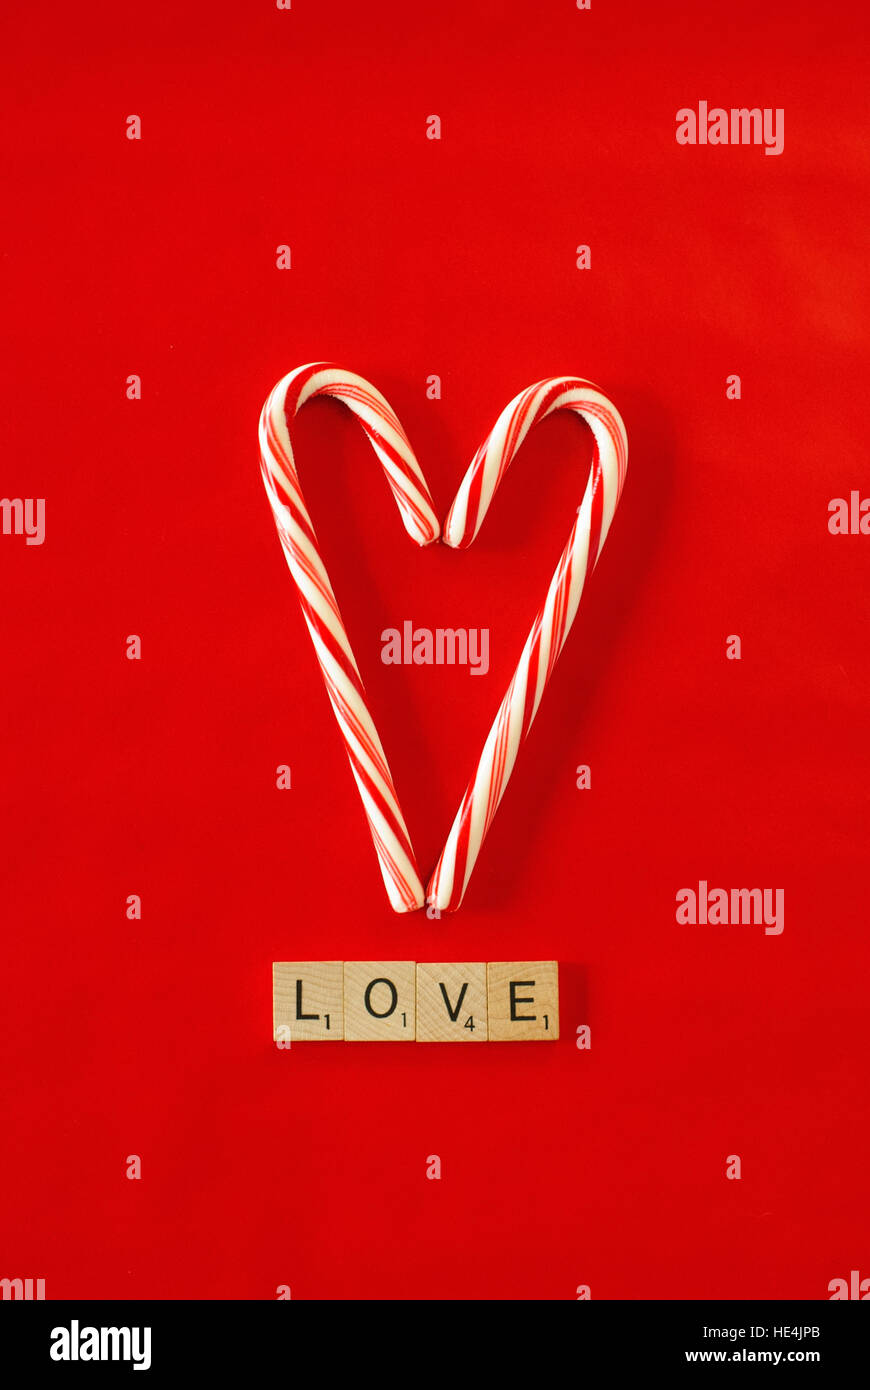 Candy Cane coeur sur fond rouge, l'amour dans des lettres de scrabble Banque D'Images